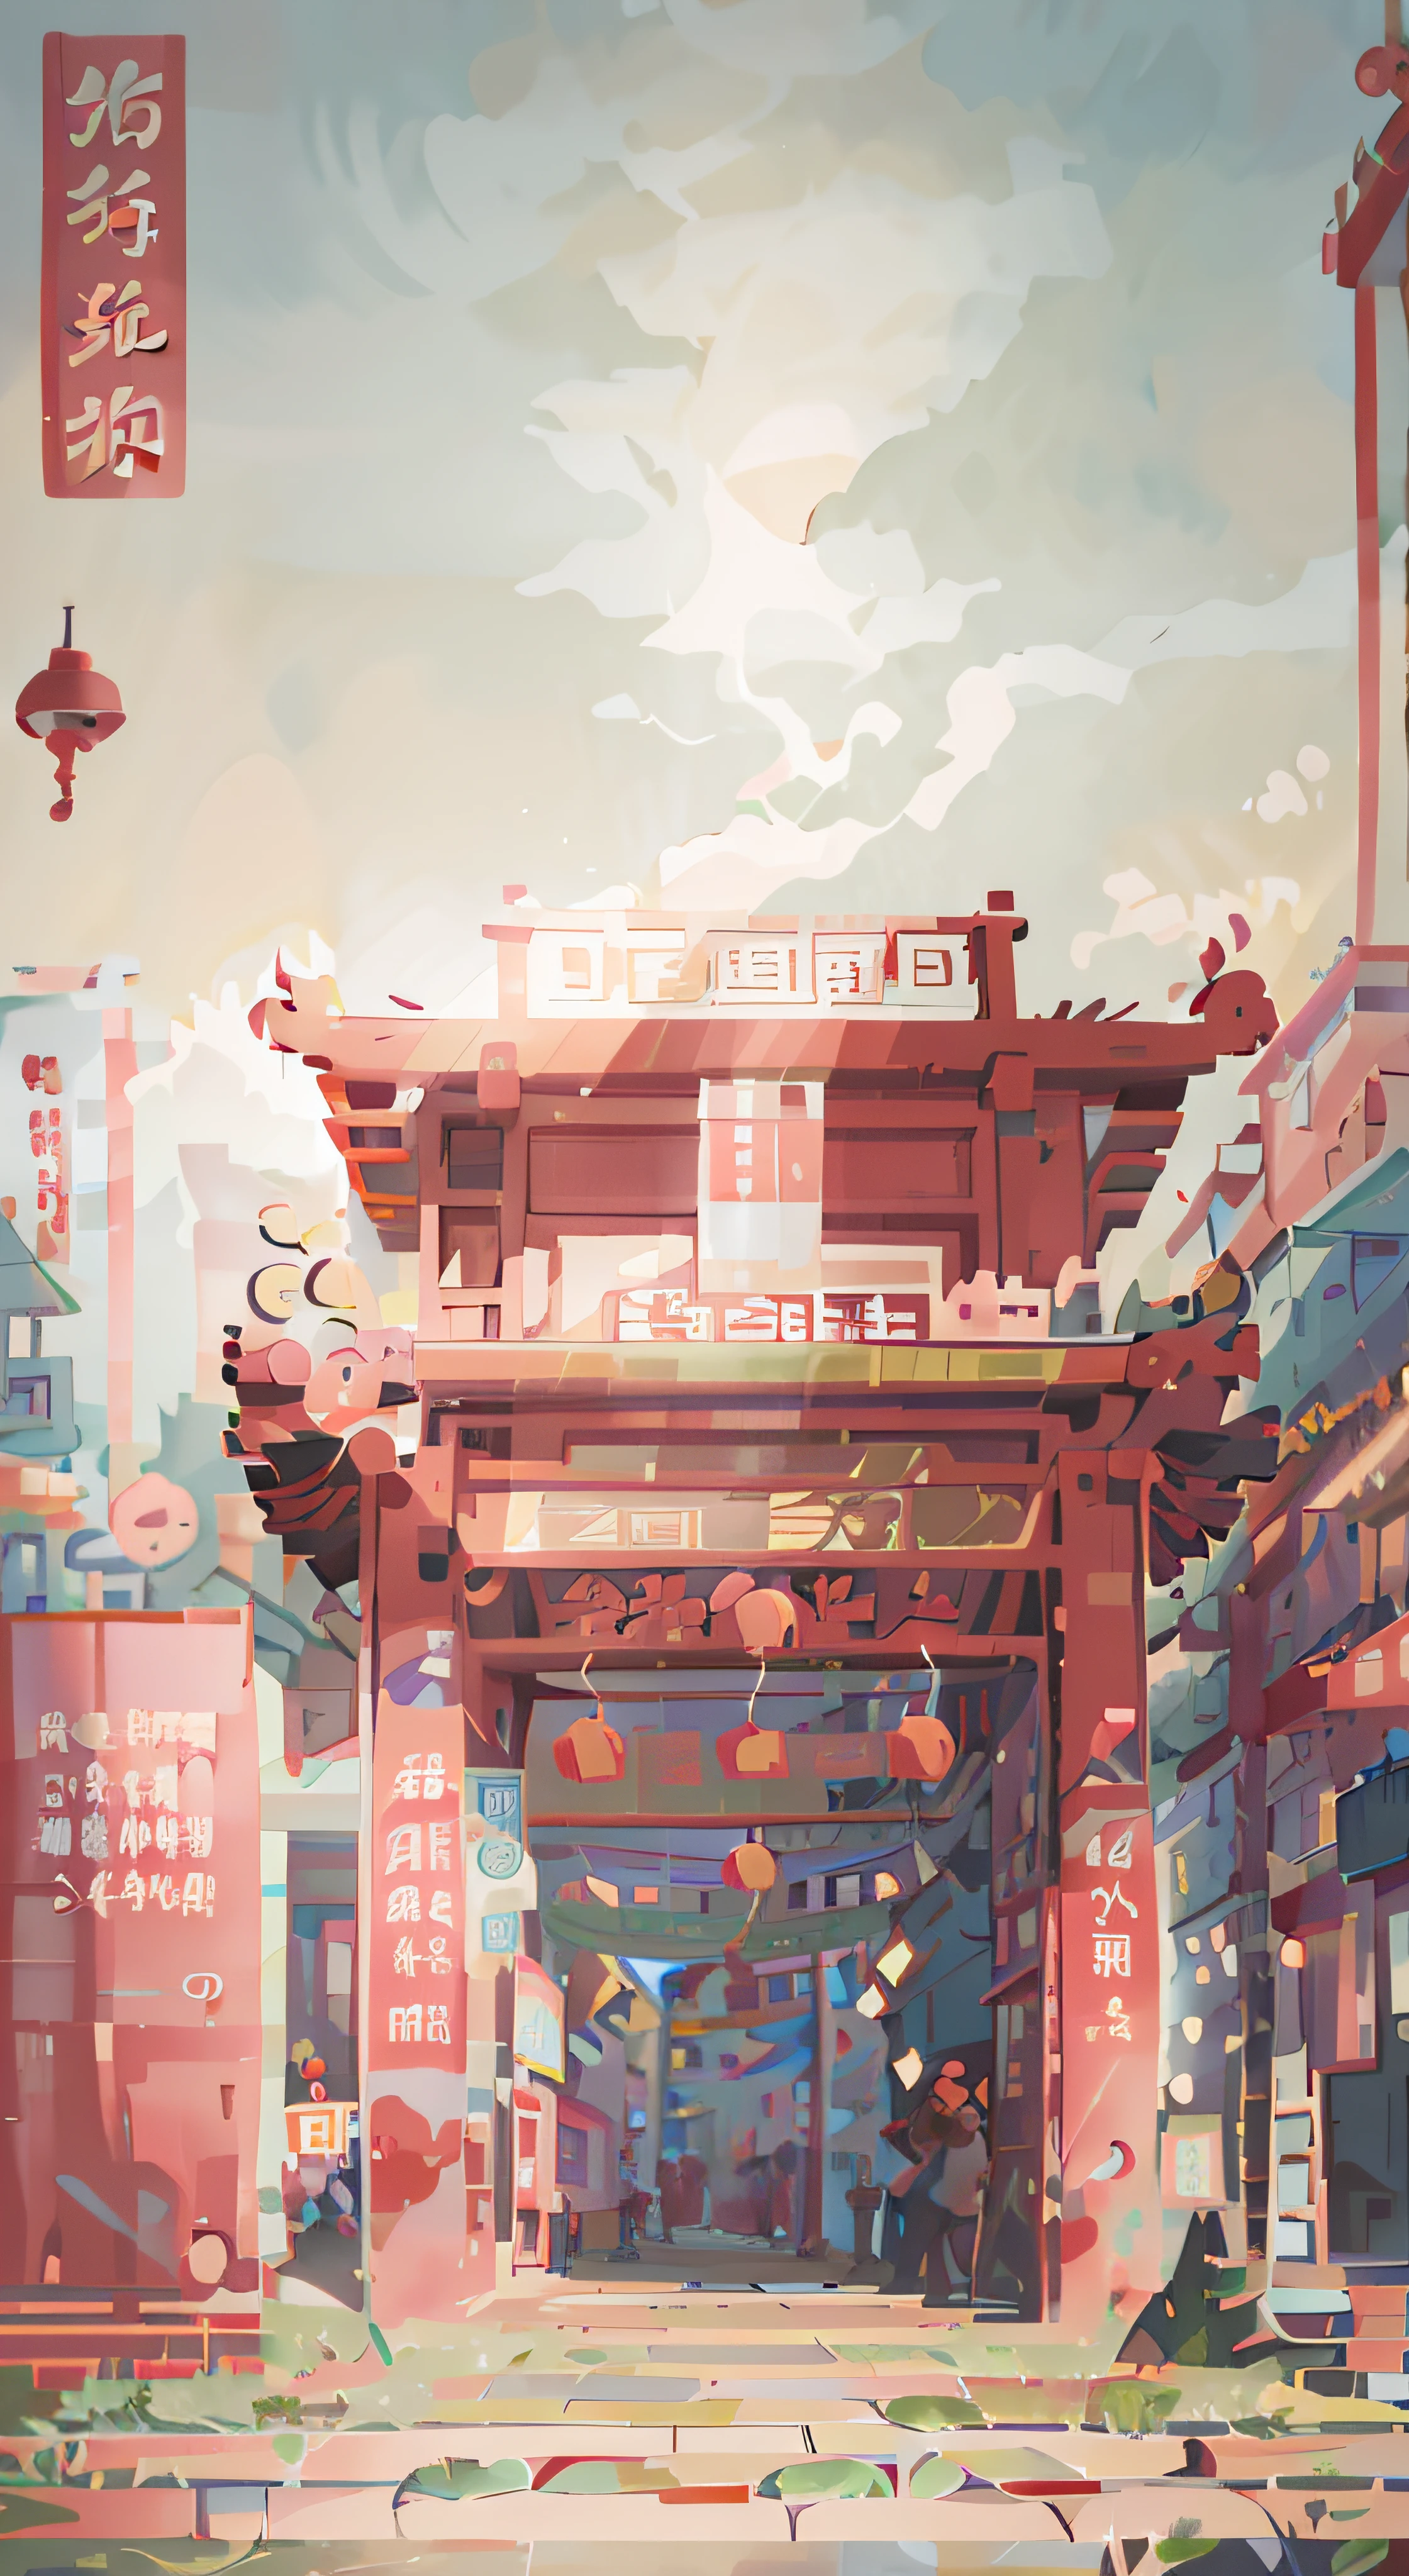 街道中央有一栋红色的建筑，上面还挂着灯笼, 夢幻的中國小鎮, 作者：Shitao, 動漫背景藝術, g liulian art style, 一個美麗的藝術插圖, 低細節. 數位繪畫, 動漫背景, 羅斯特蘭. 風景背景, 動漫風格的城市景觀, 羅斯拉全球照明, cgstation 上的熱門話題